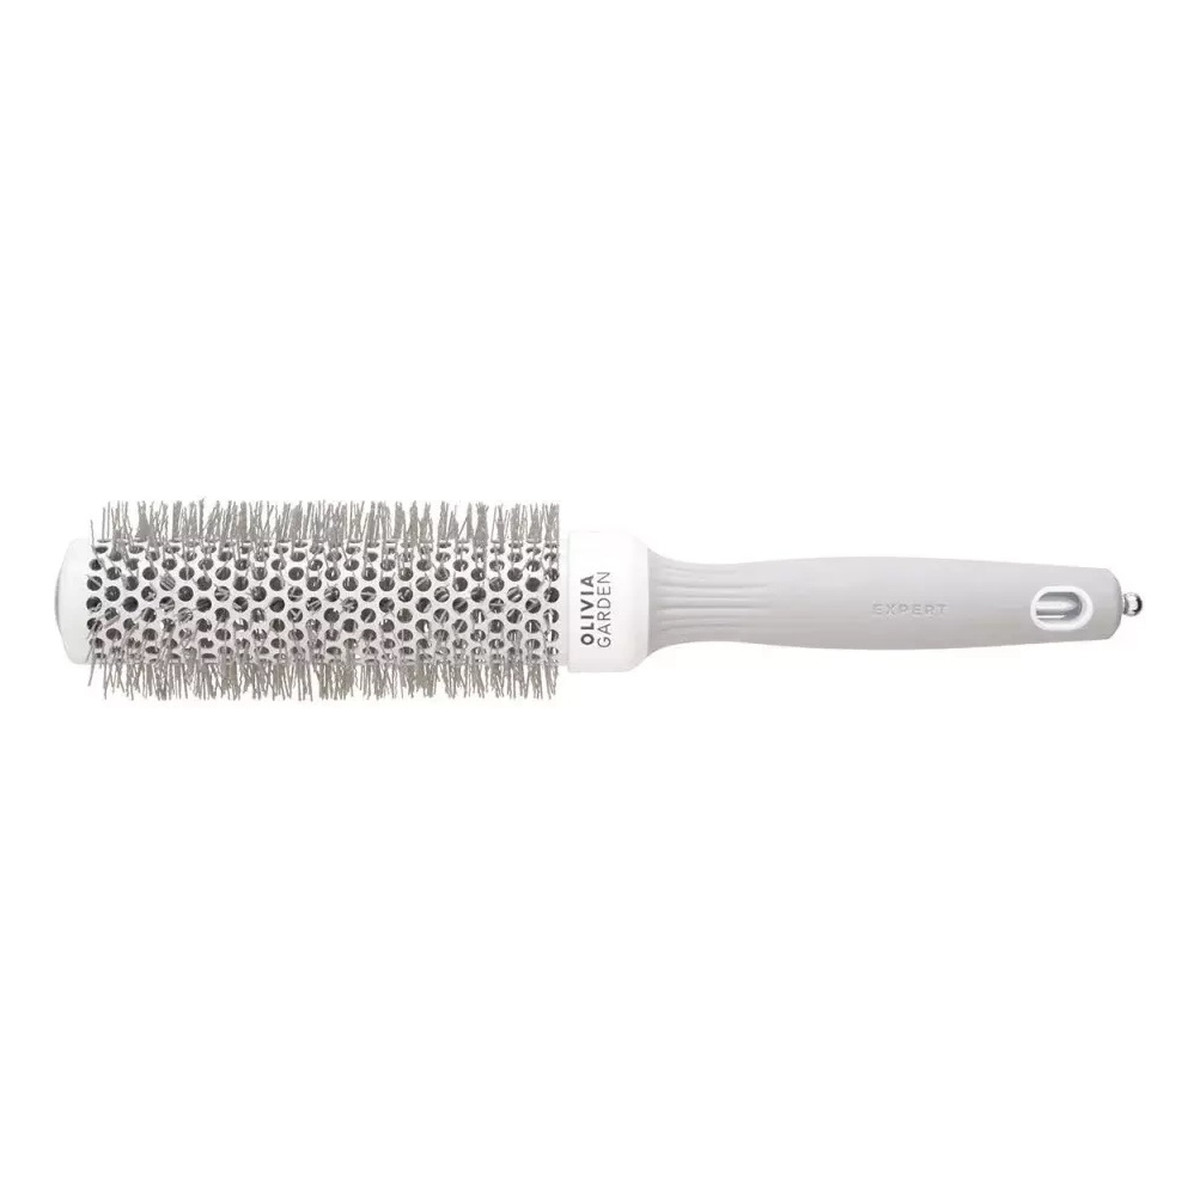 Olivia Garden Expert blowout speed wavy bristles szczotka do suszenia i modelowania włosów white/grey 35mm